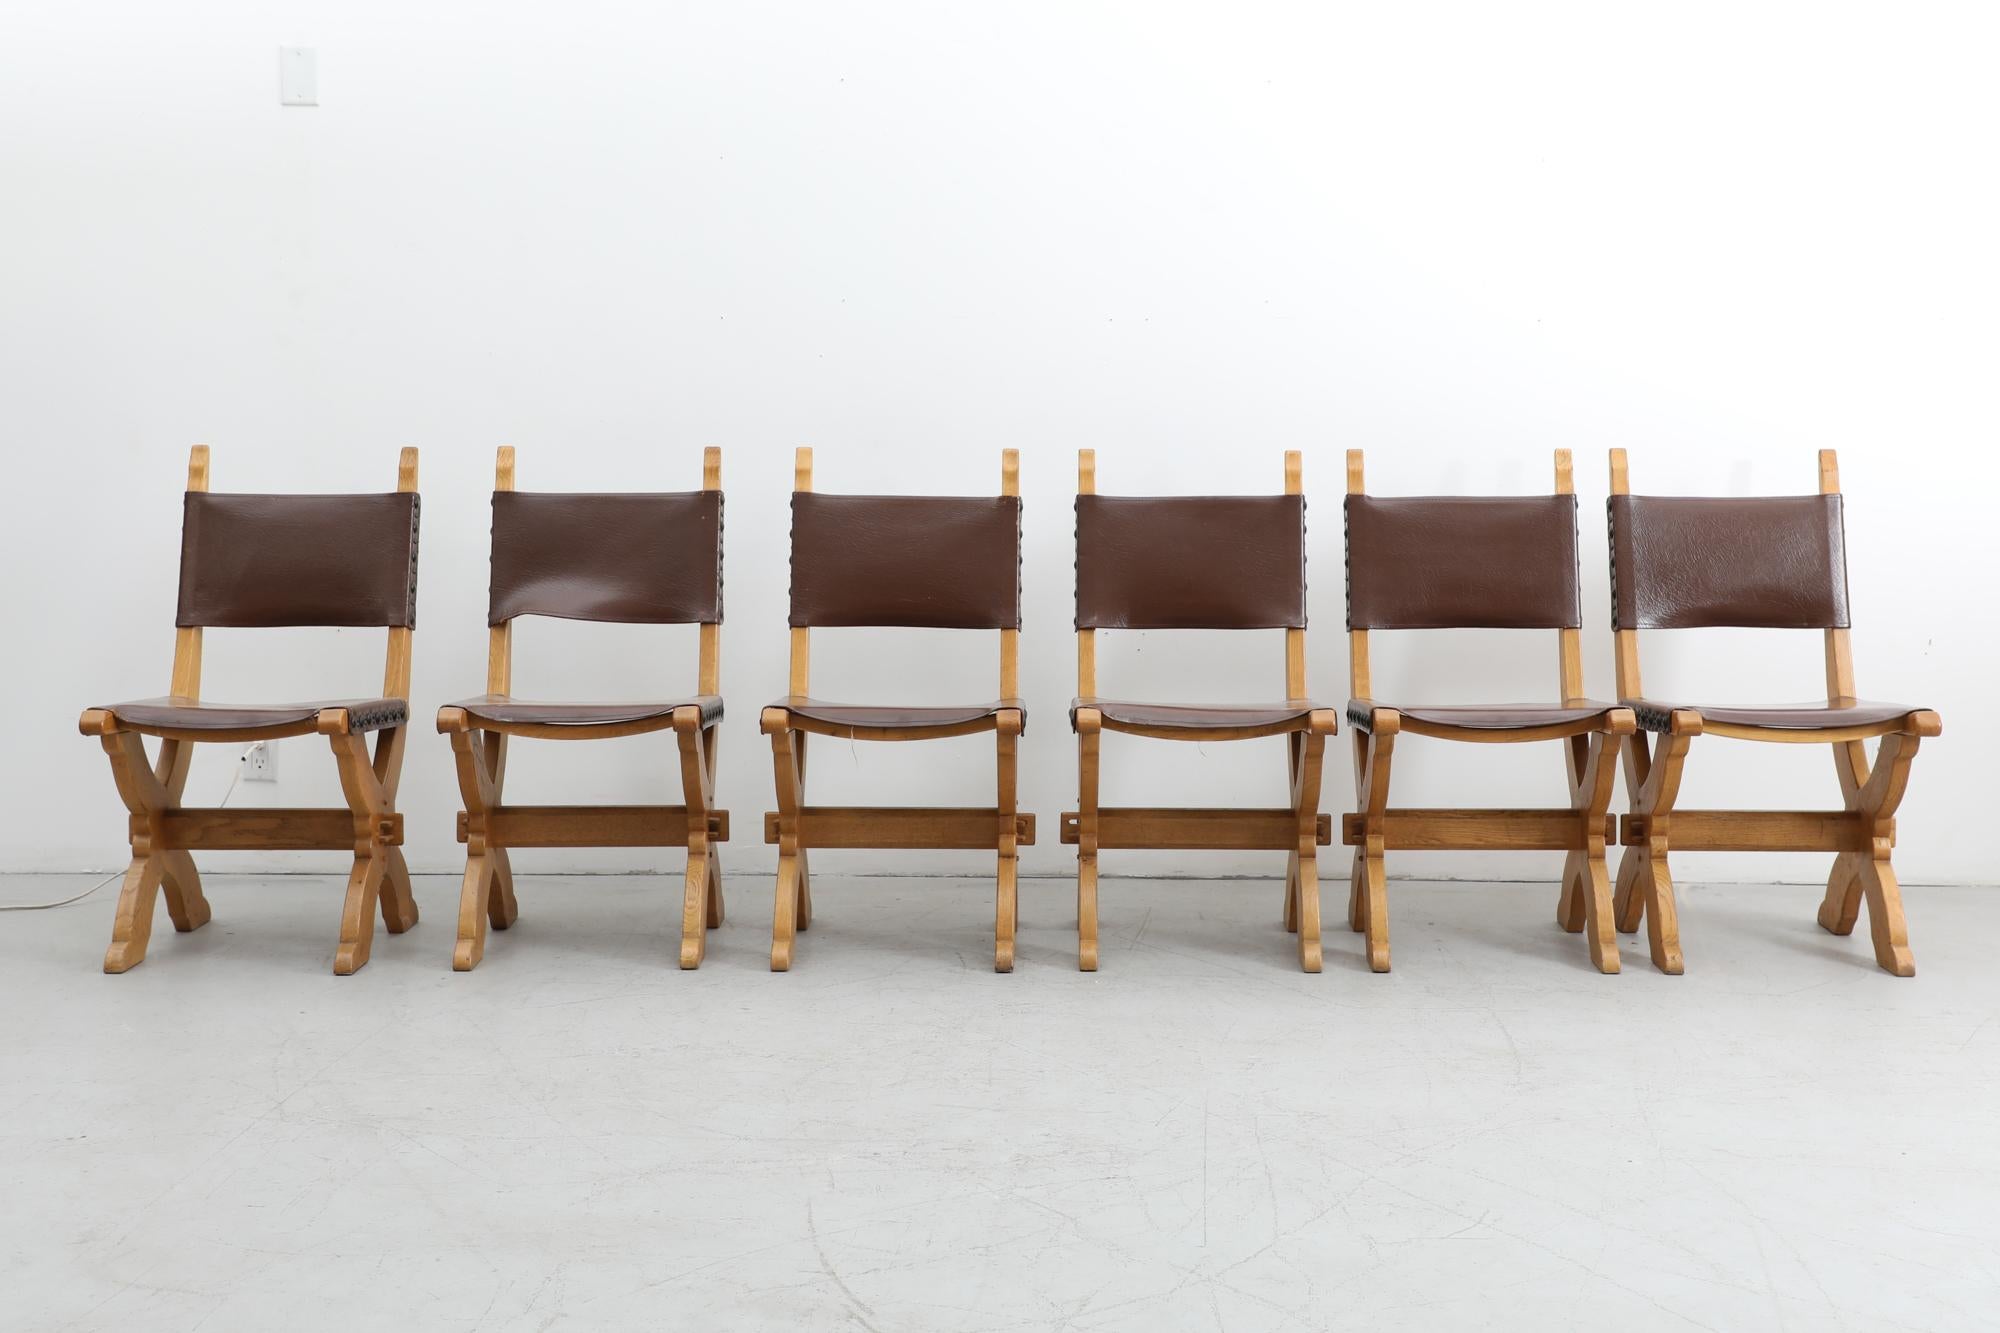 Brutalistische Esszimmerstühle, niederländisches Design von Bram Sprij für Sprij Meubelen Holland aus den 1960er Jahren. Gestell aus massivem Eichenholz und Sitzfläche aus Leder. Die Stühle sind mit einem Zuordnungszeichen versehen. Im